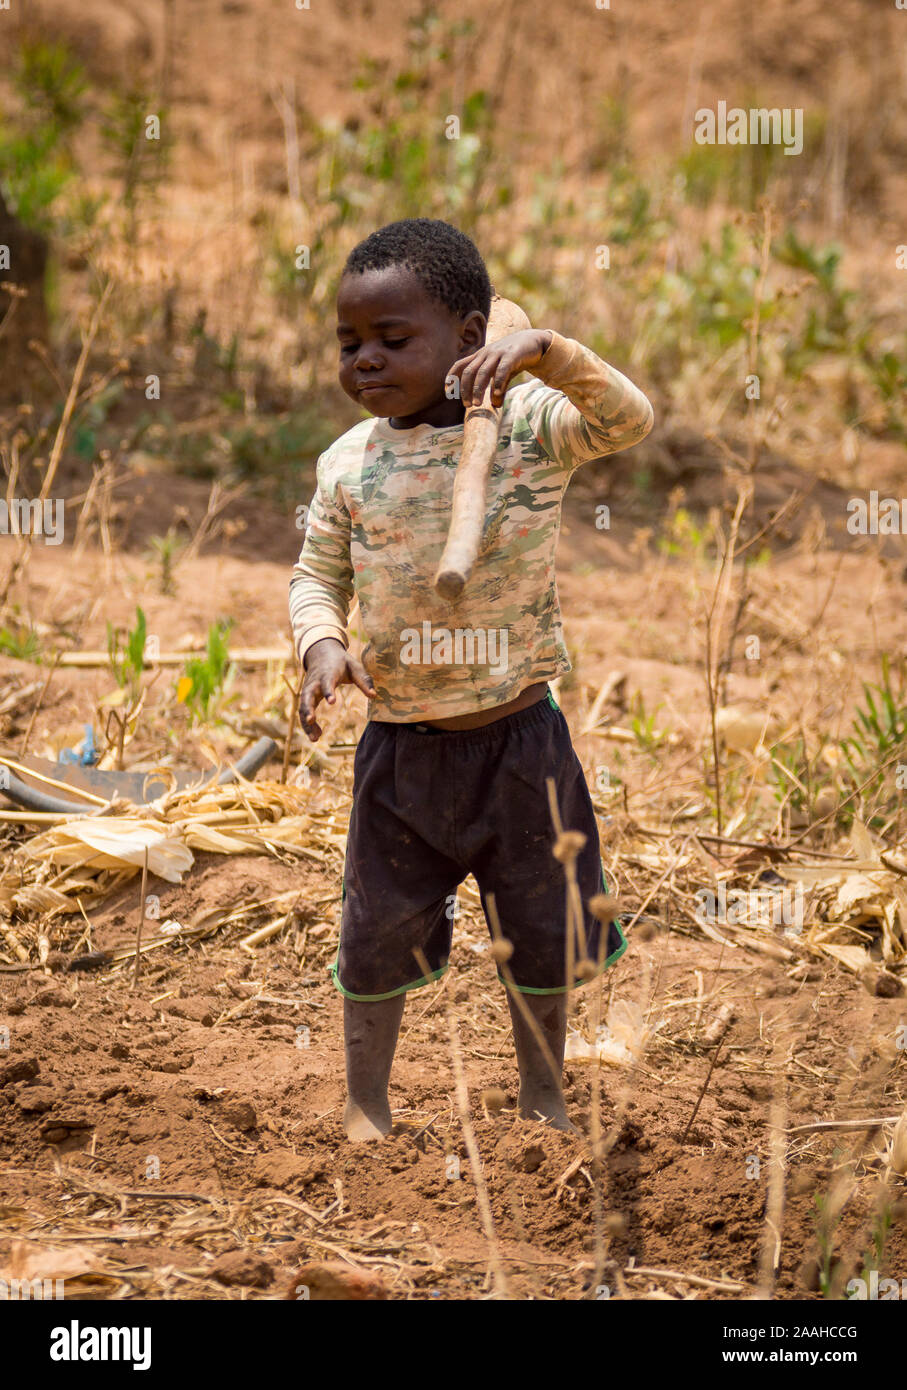 Un jeune enfant dans un village rural au Malawi ramasse un hoe Banque D'Images